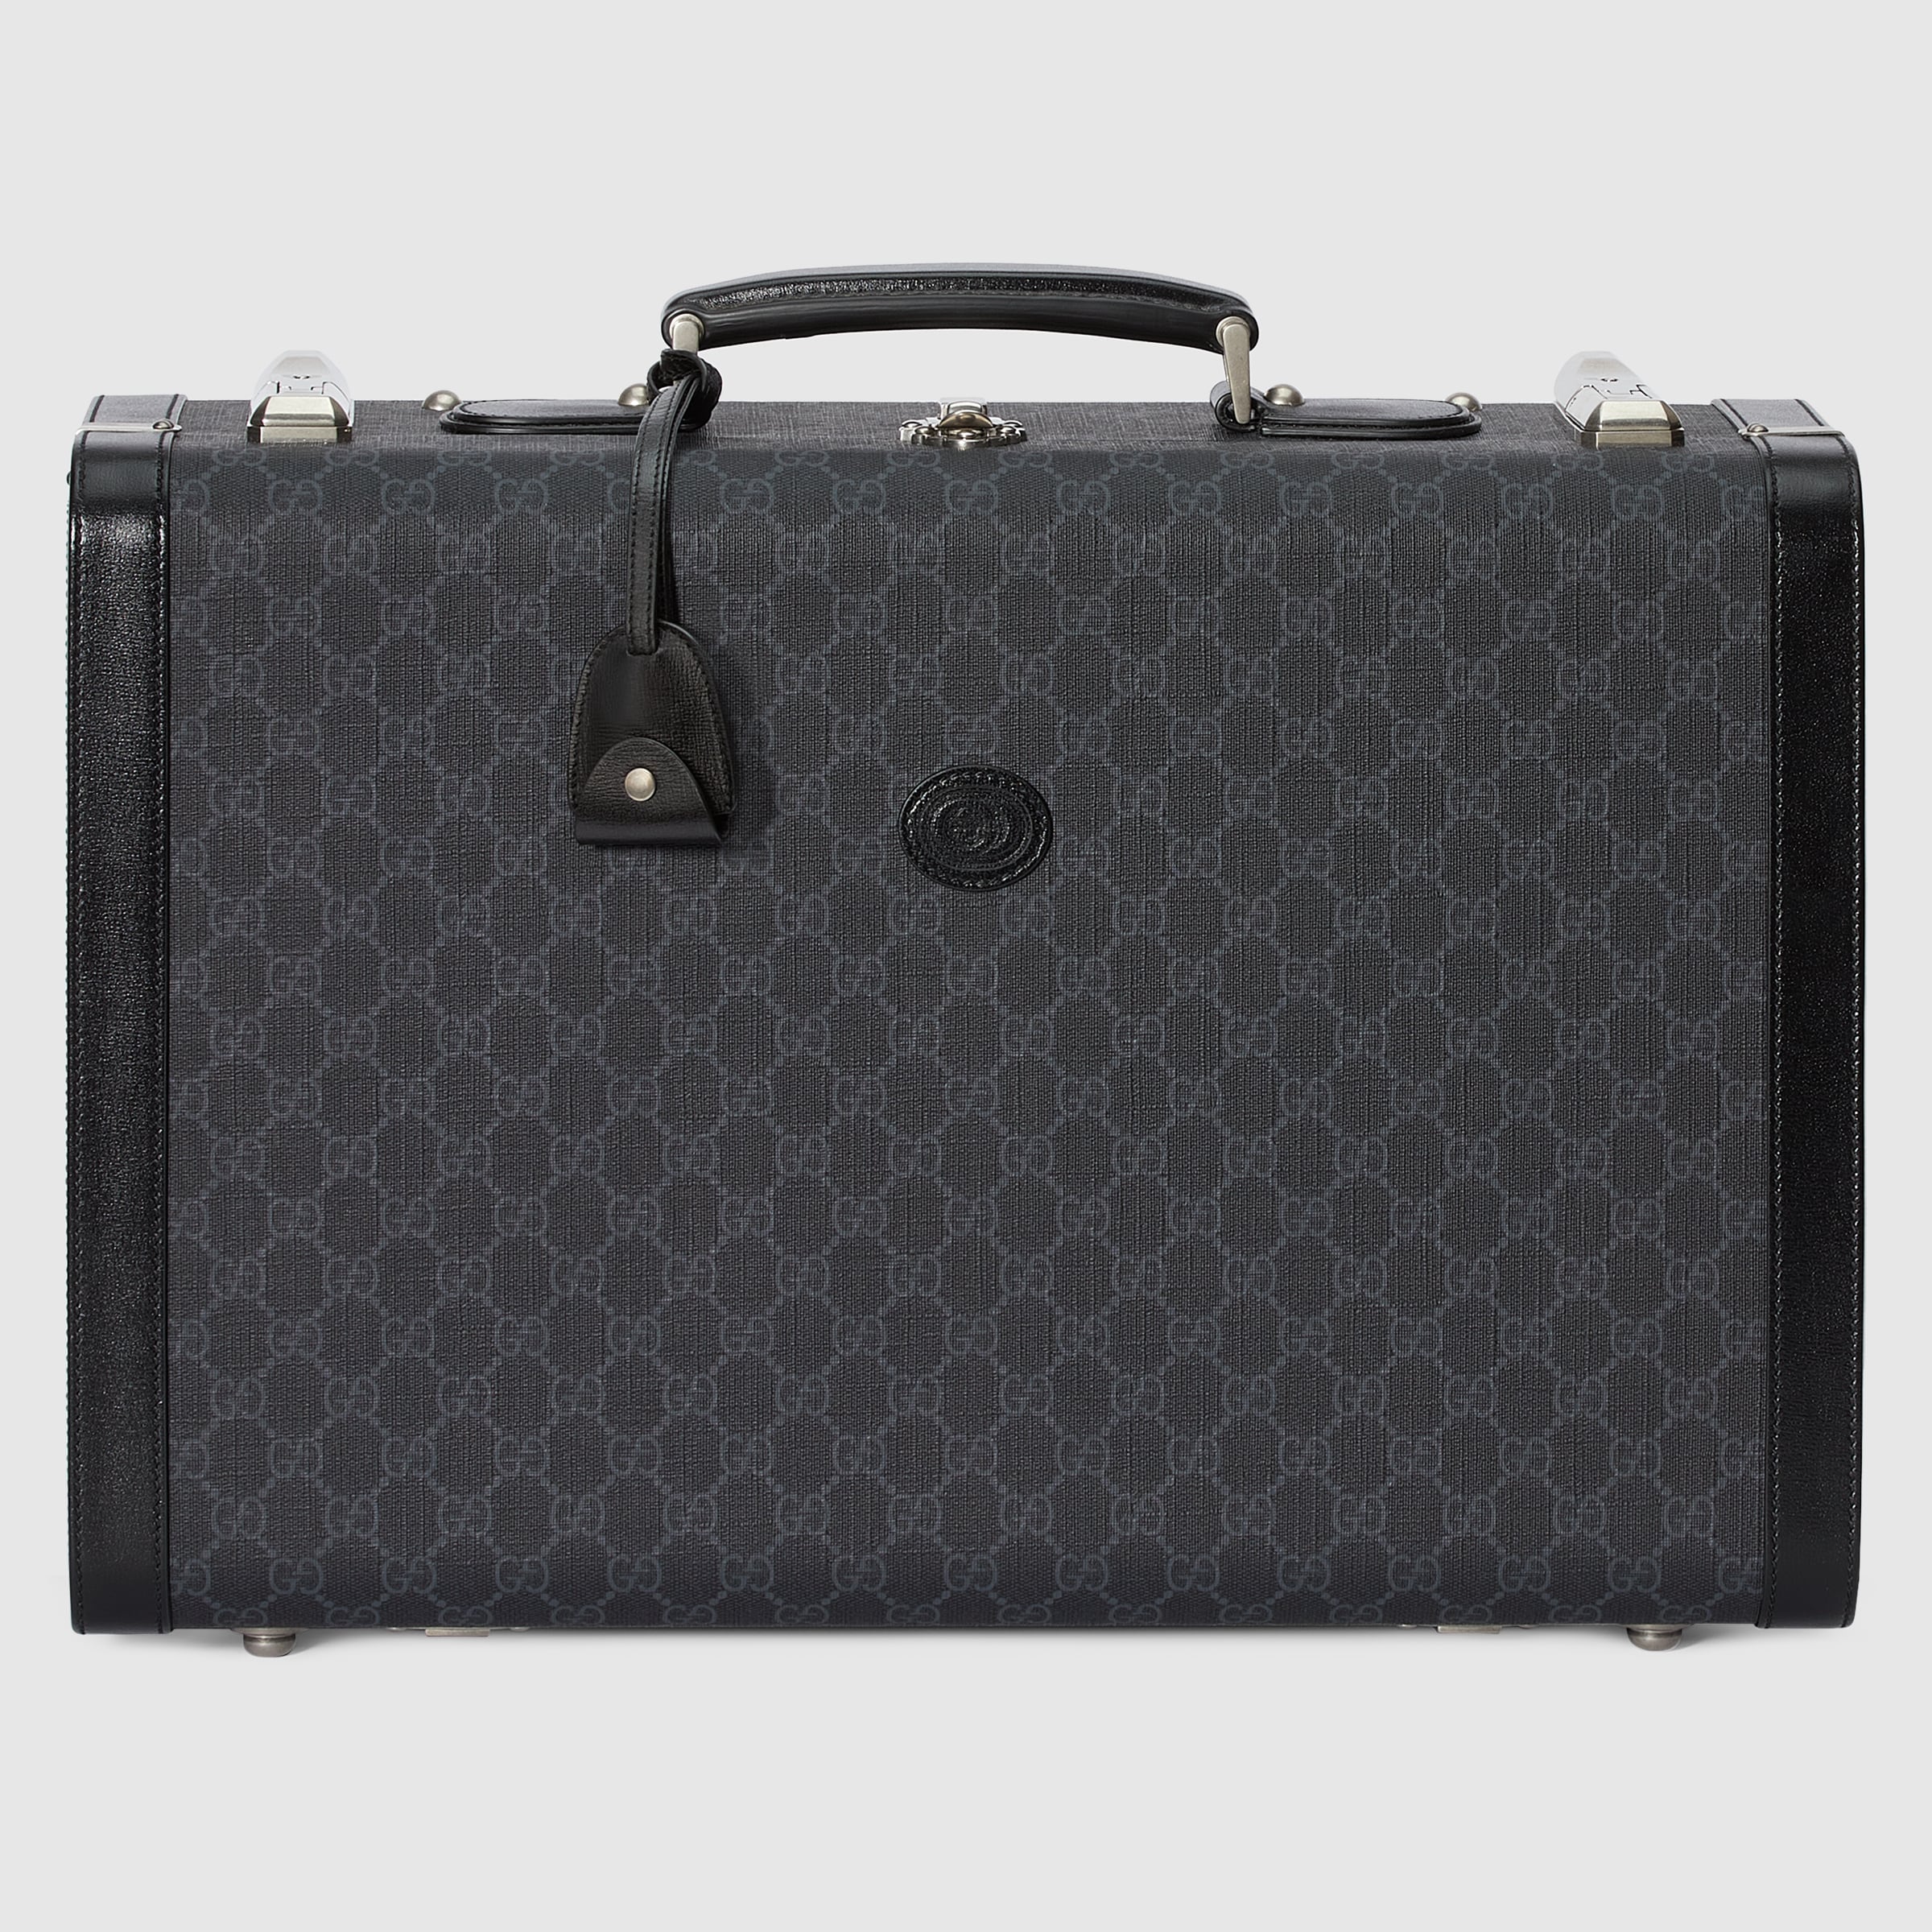 Gucci gg medium rigid suitcase